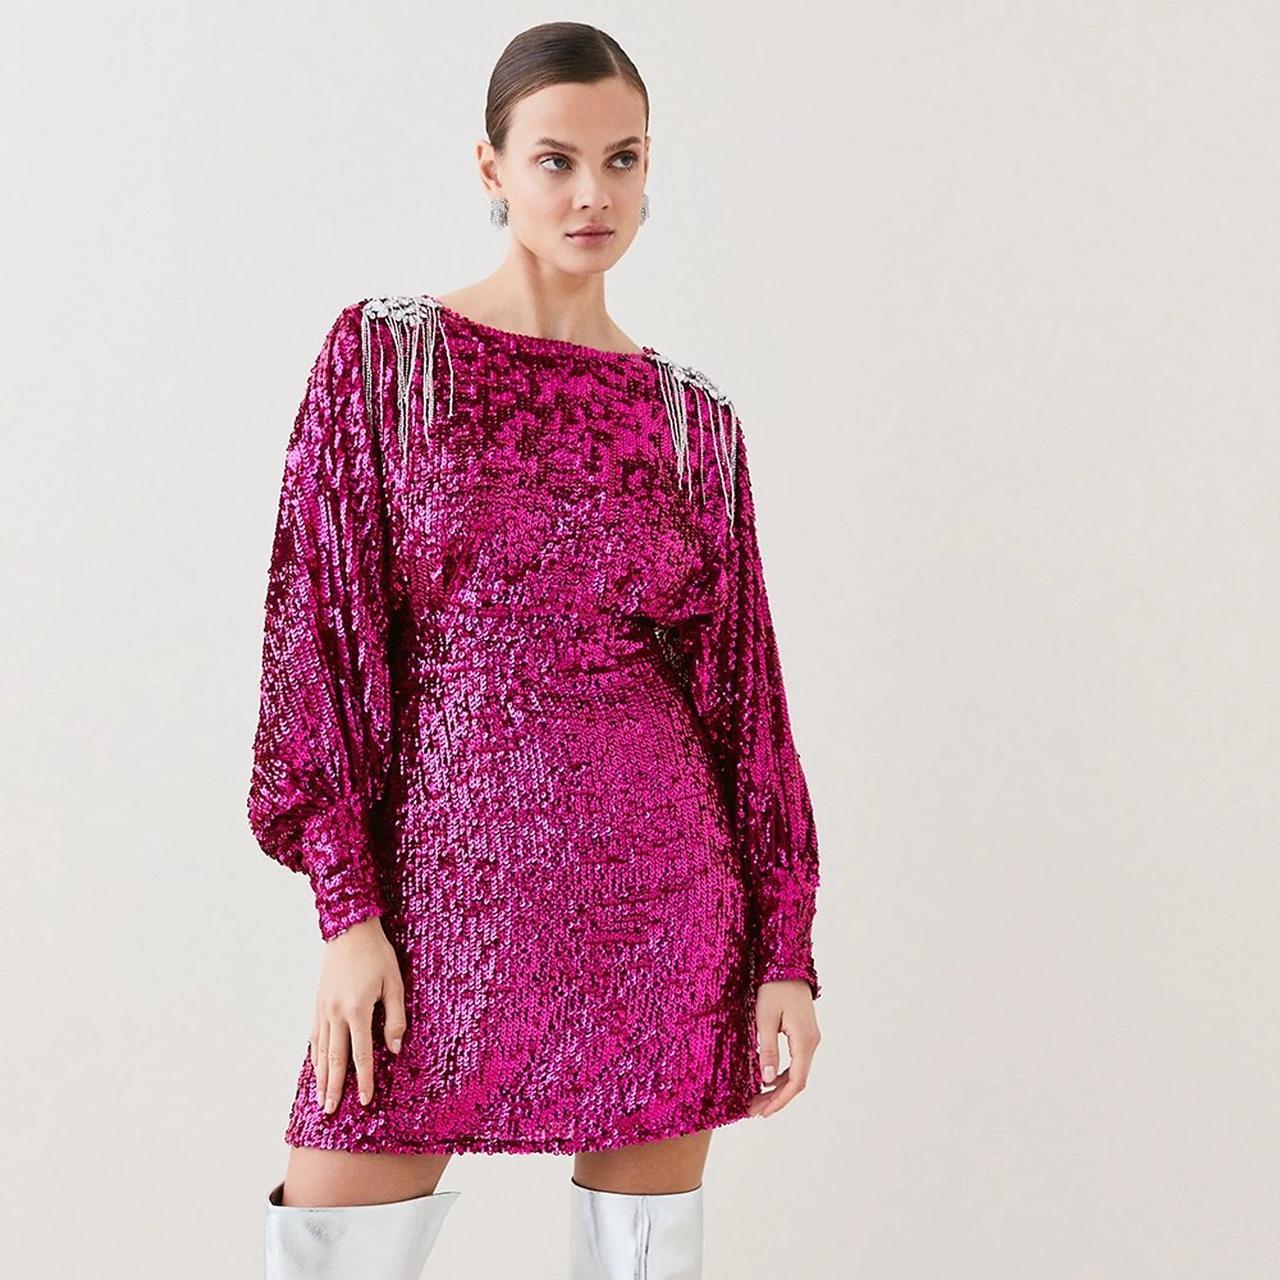 Karen Millen Women's Pink and Silver Dress (2)